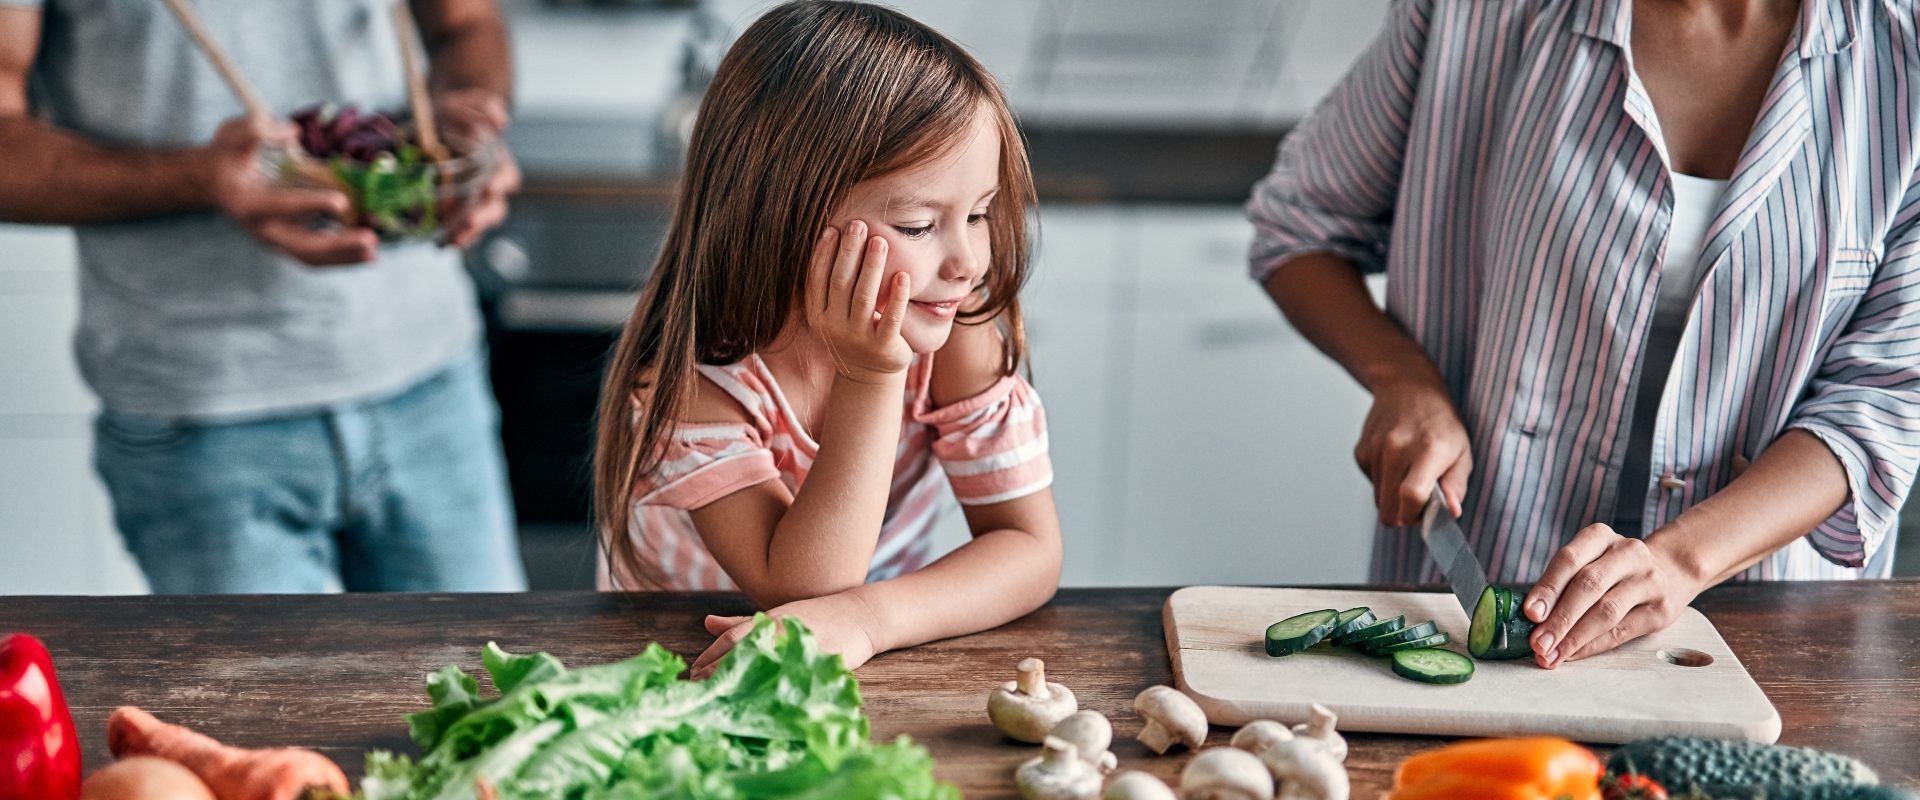 Cynk i selen na odporność - gdzie szukać w diecie tych cennych składników i czy faktycznie wzmacniają układ odpornościowy? Dziewczynka przygląda się jak mama kroi warzywa w kuchni, w tle stoi ojciec.